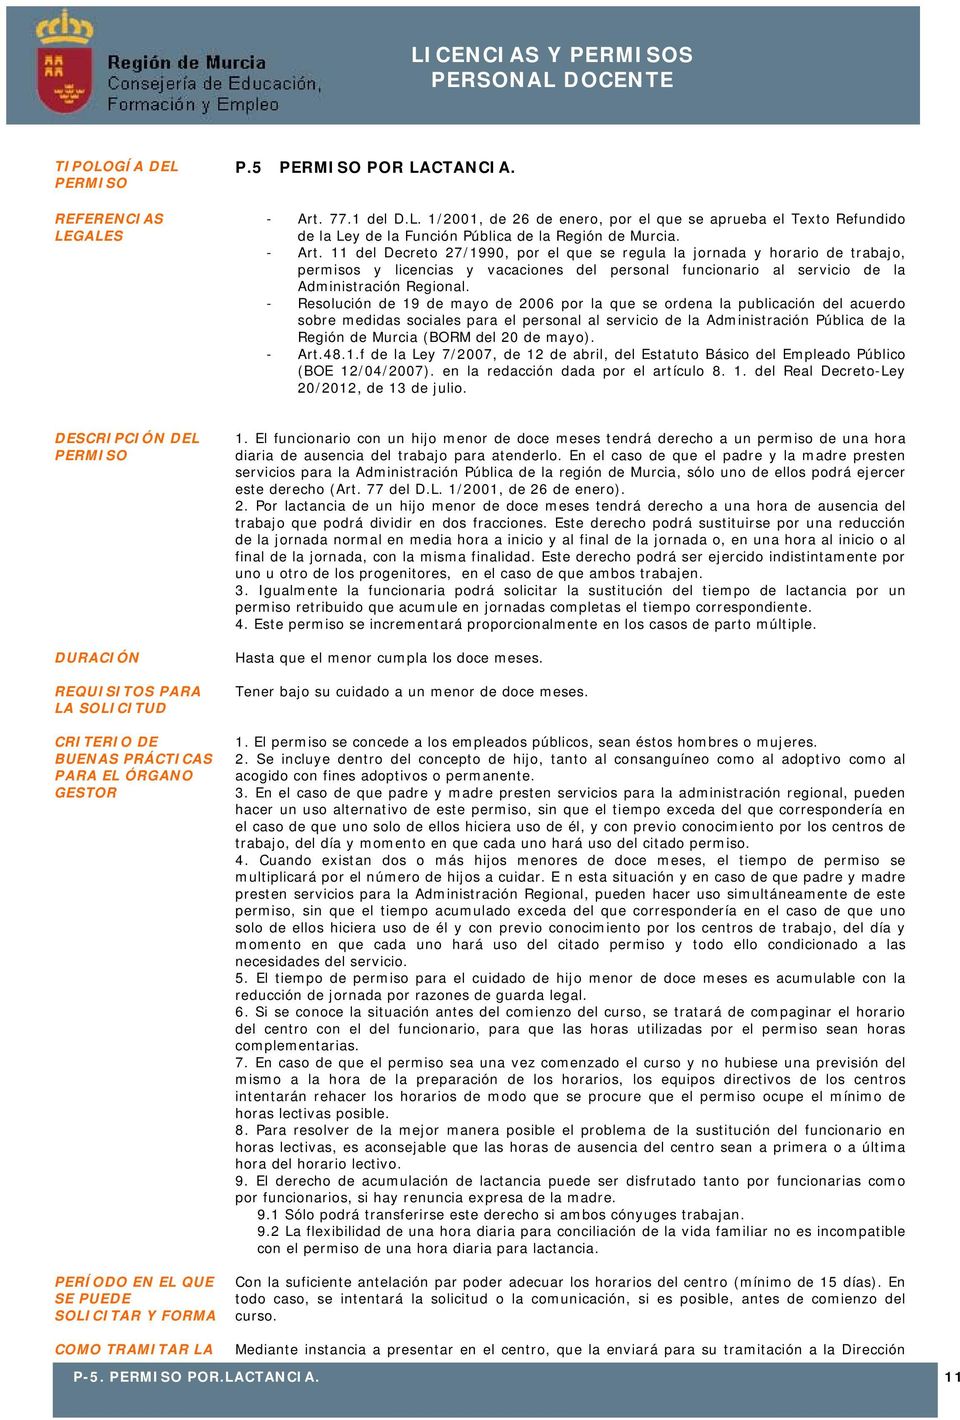 - Resolución de 19 de mayo de 2006 por la que se ordena la publicación del acuerdo sobre medidas sociales para el personal al servicio de la Administración Pública de la Región de Murcia (BORM del 20